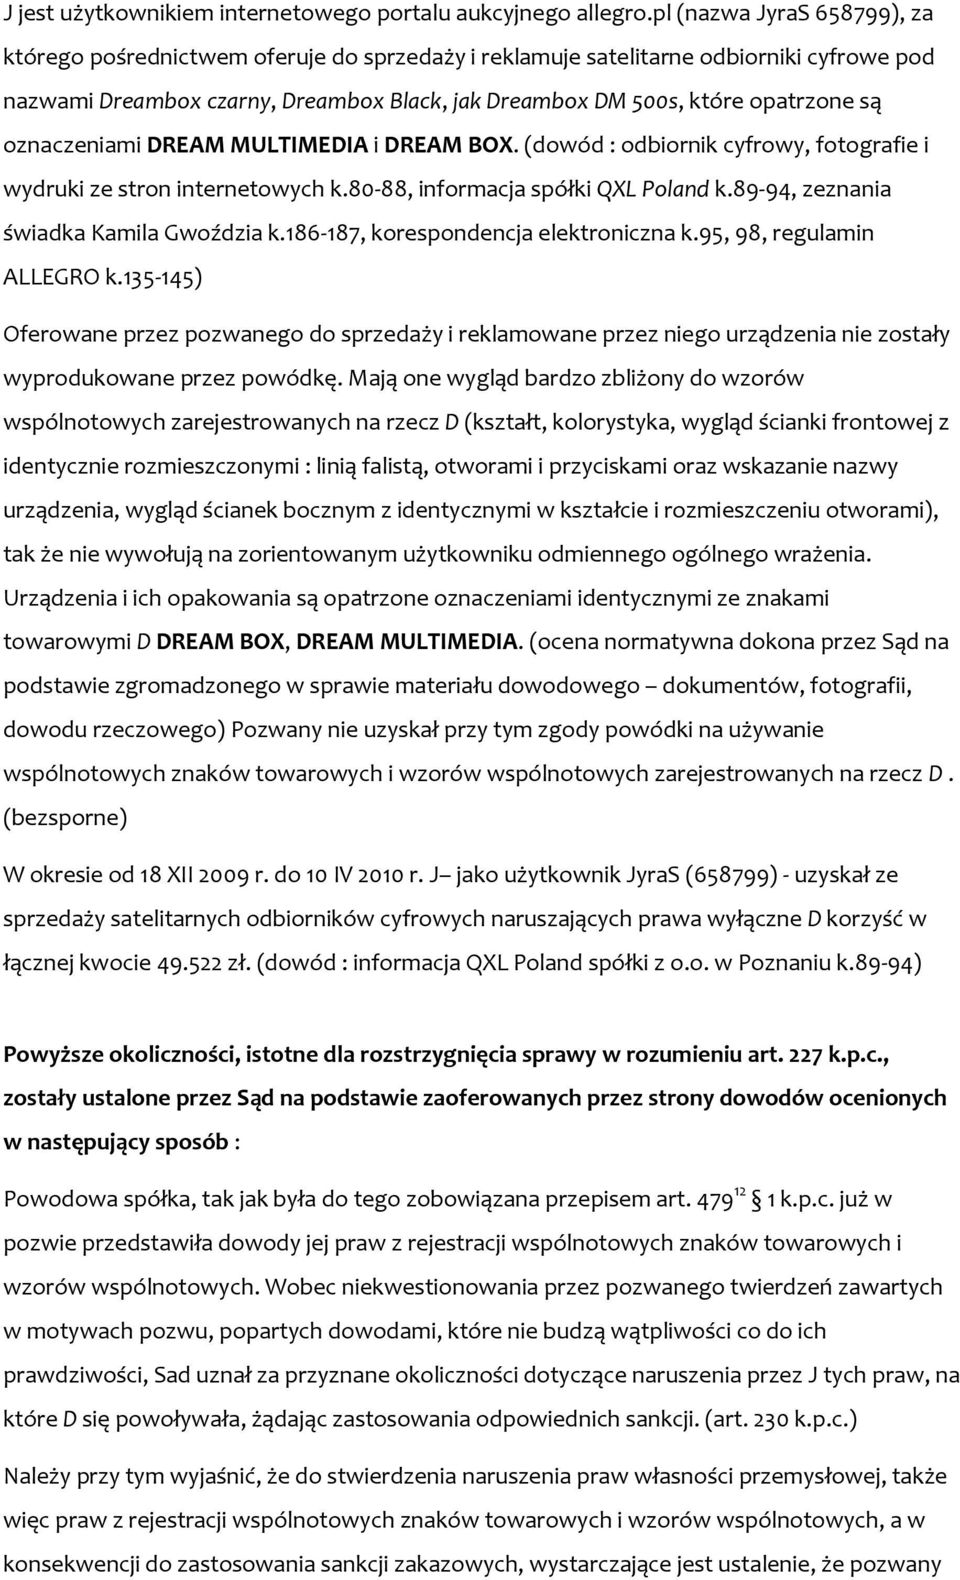 oznaczeniami DREAM MULTIMEDIA i DREAM BOX. (dowód : odbiornik cyfrowy, fotografie i wydruki ze stron internetowych k.80-88, informacja spółki QXL Poland k.89-94, zeznania świadka Kamila Gwoździa k.